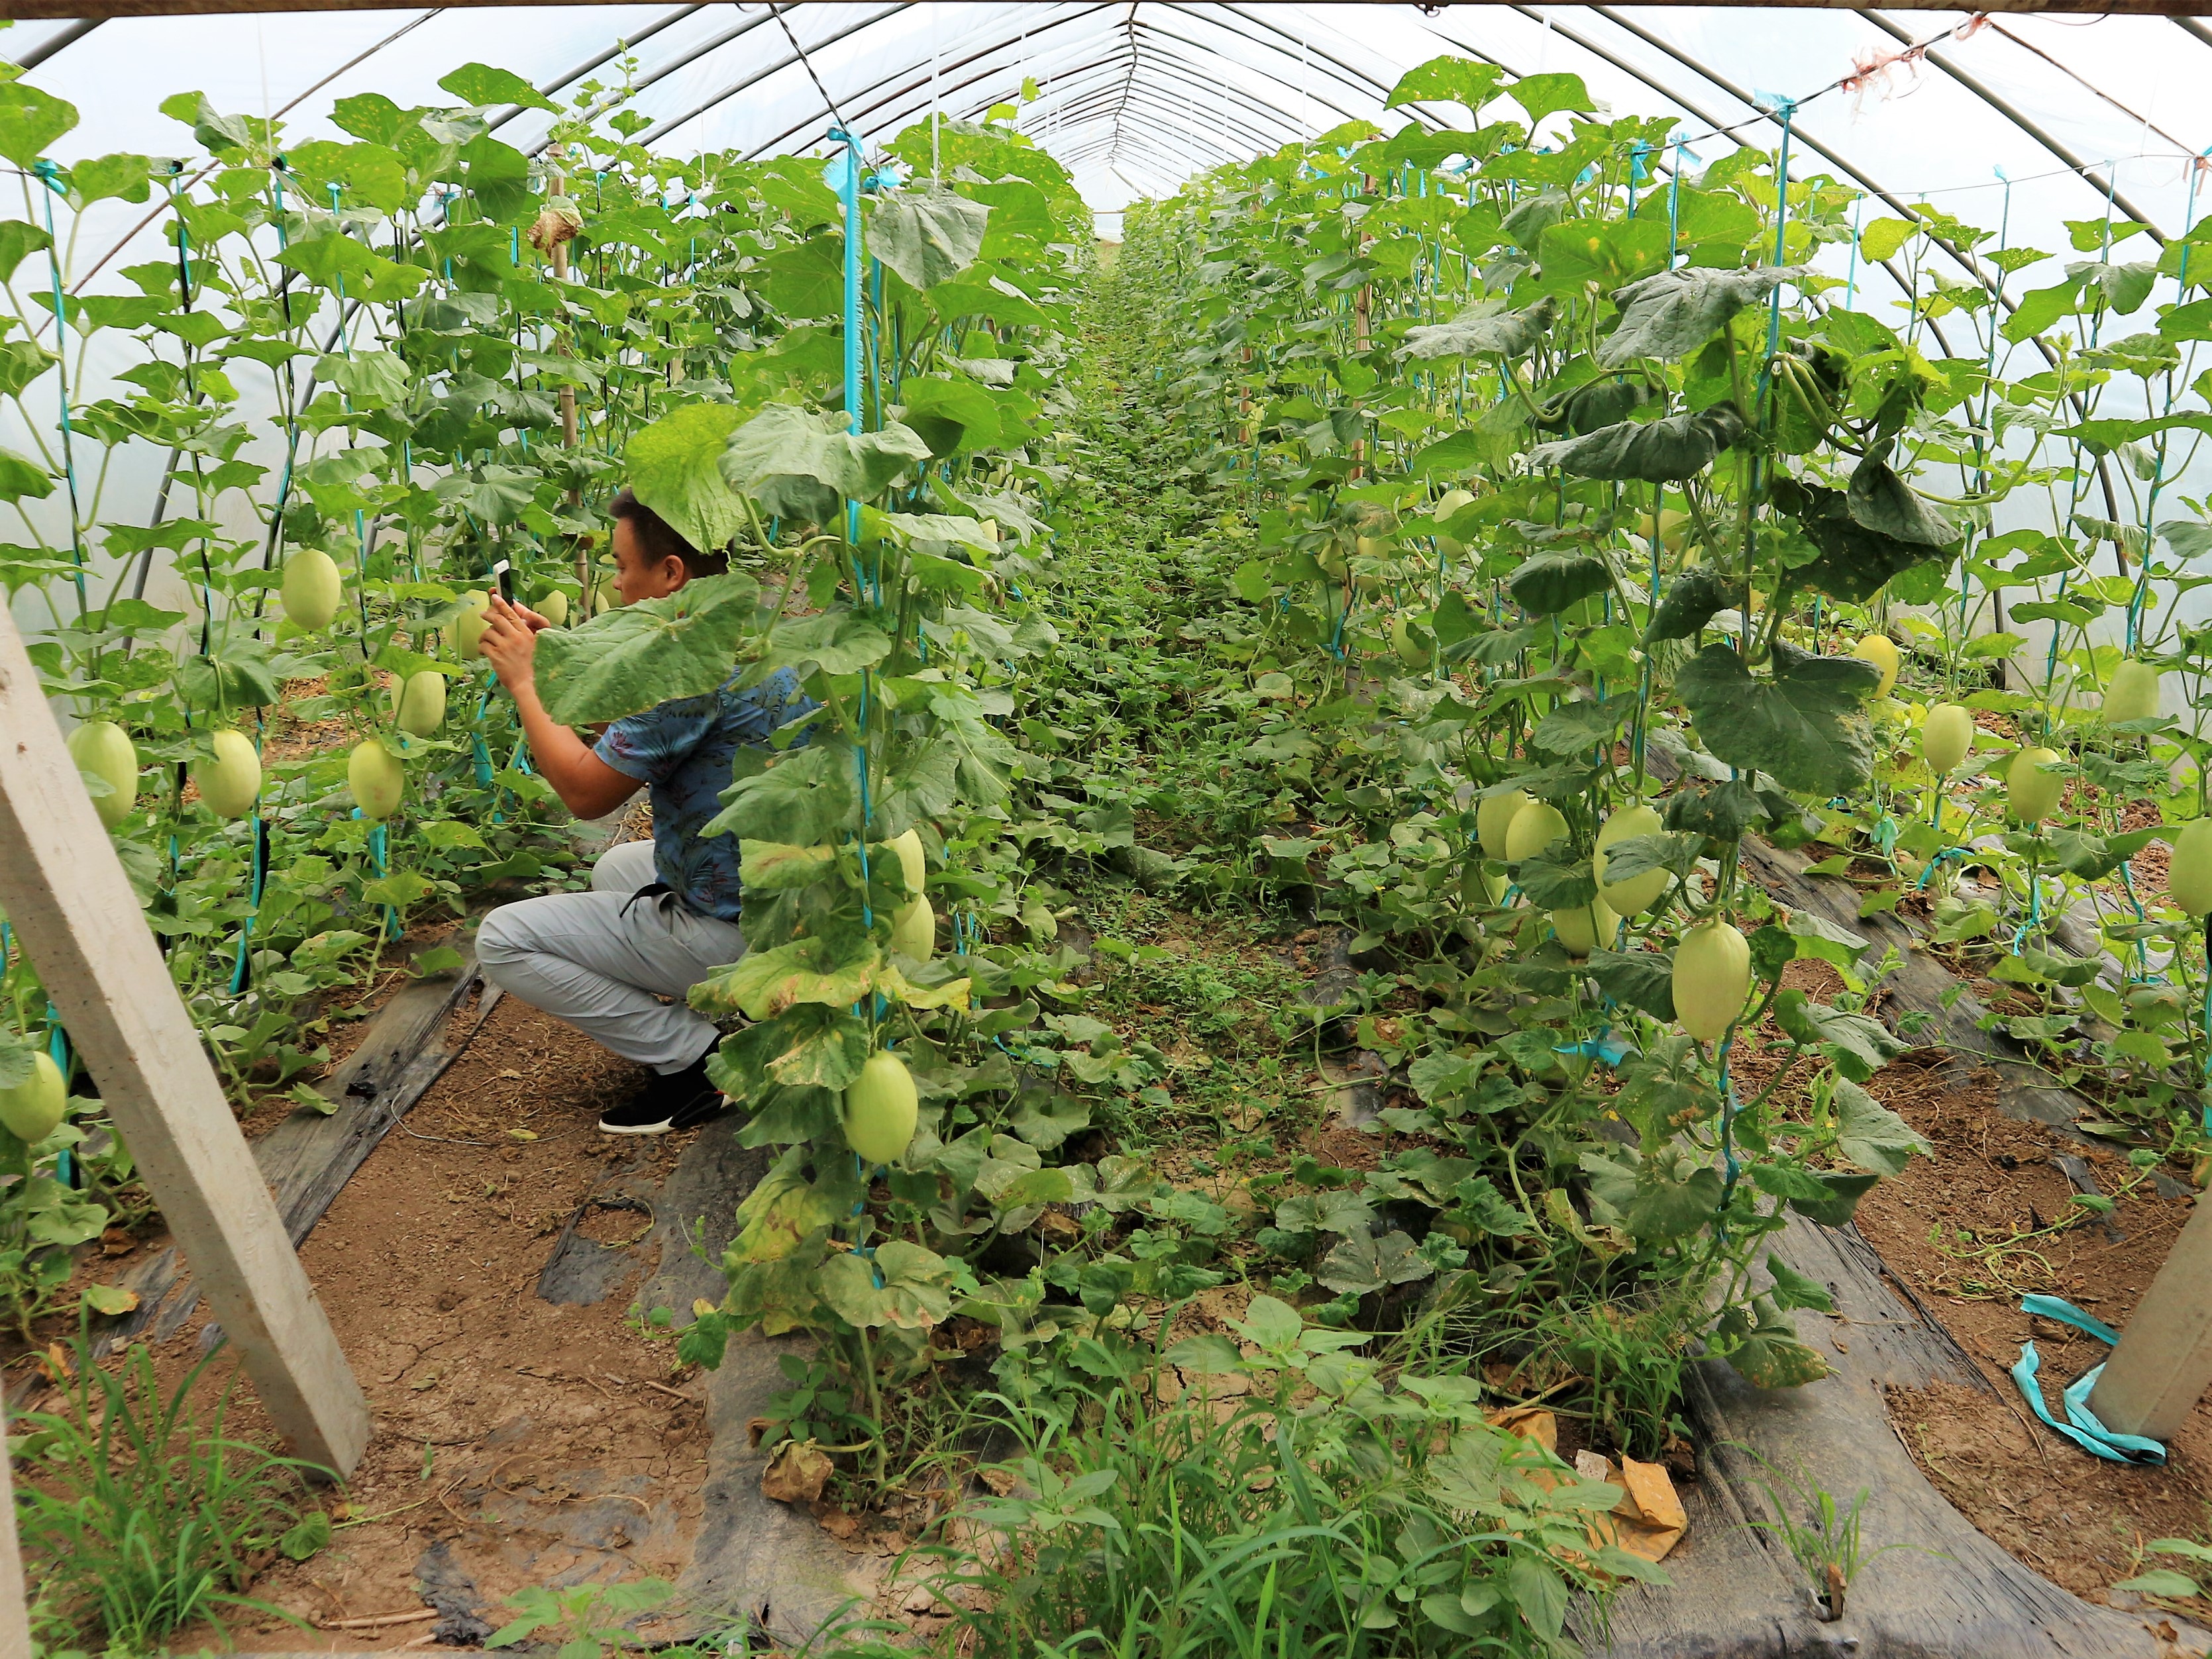 原创农民种植一种香瓜口感清脆香甜5亩收入10万元秘诀在哪里